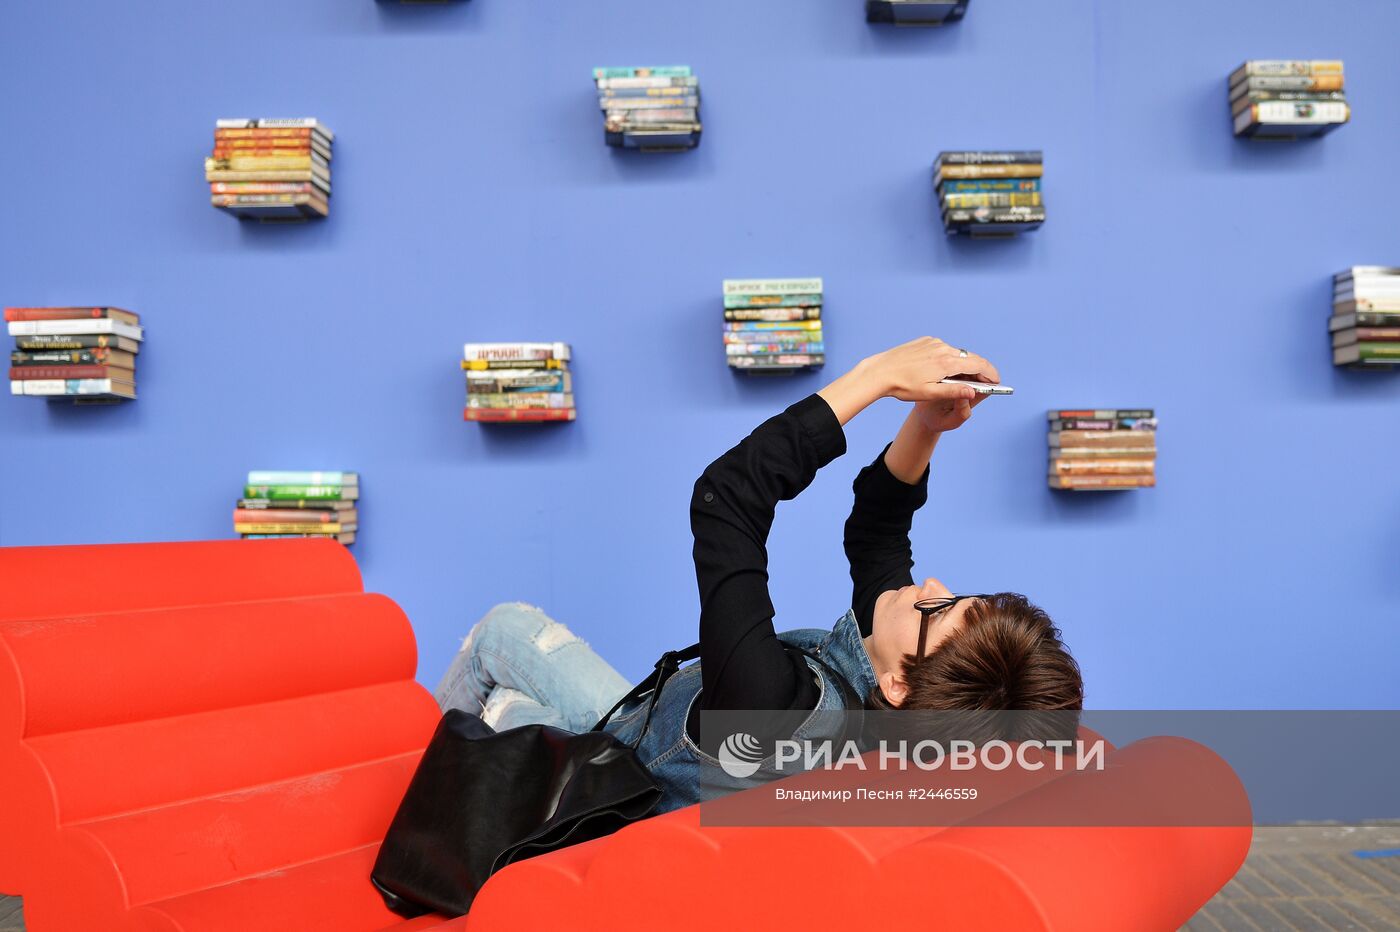 IX Московский международный открытый книжный фестиваль